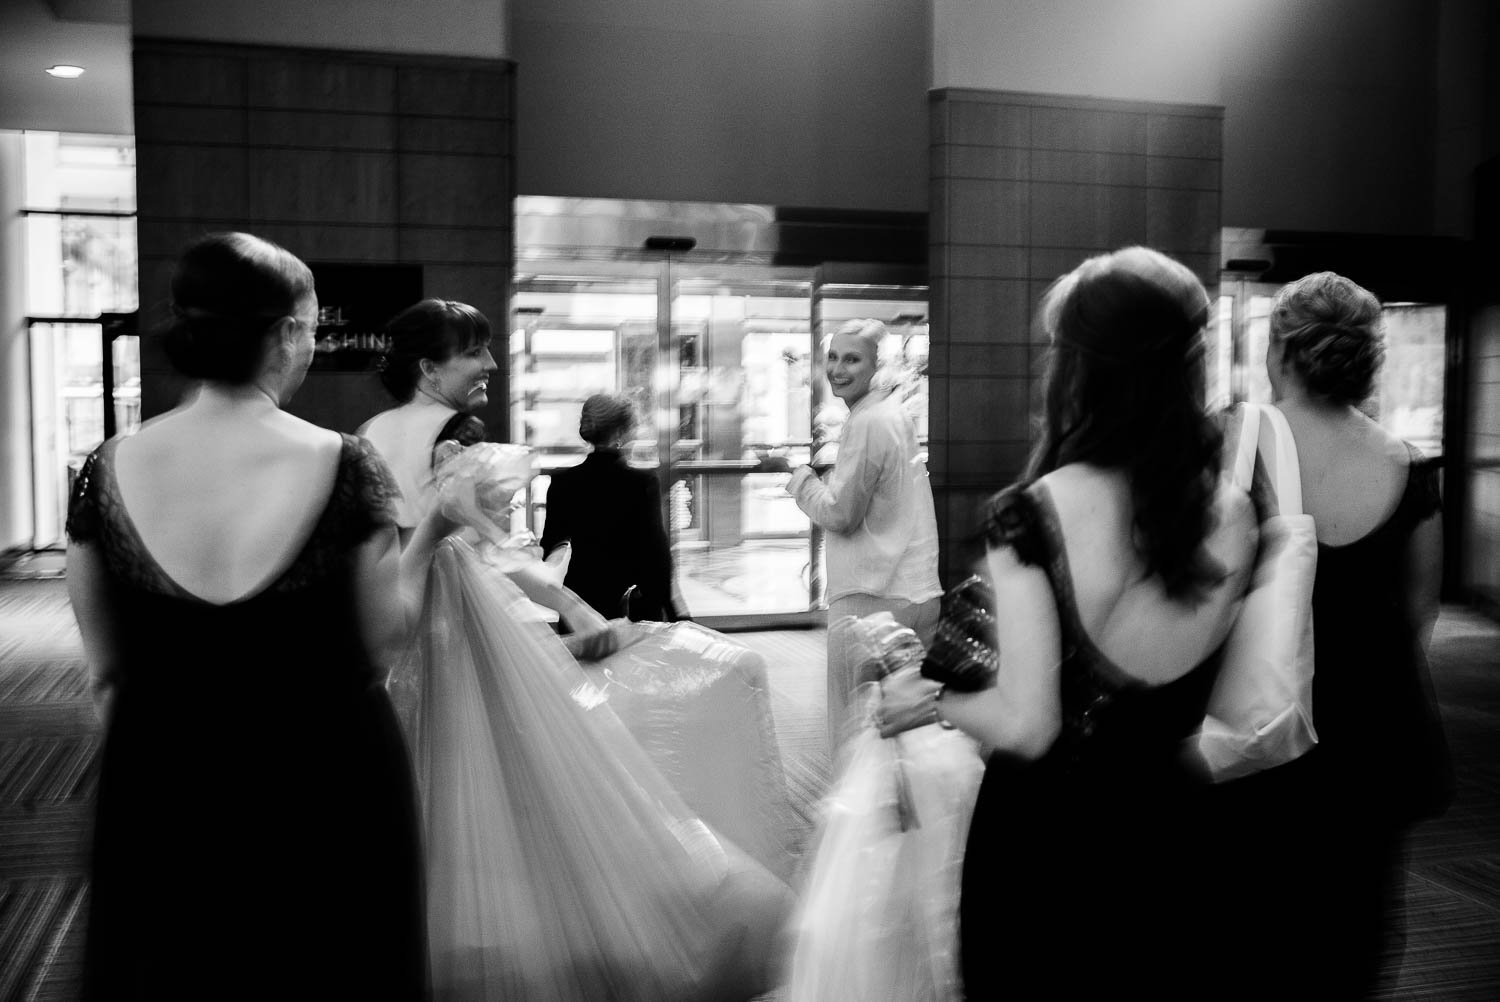 Movement shown as bride looks over her shoulder leaving Hyatt Regency Hotel, Houston Texas.